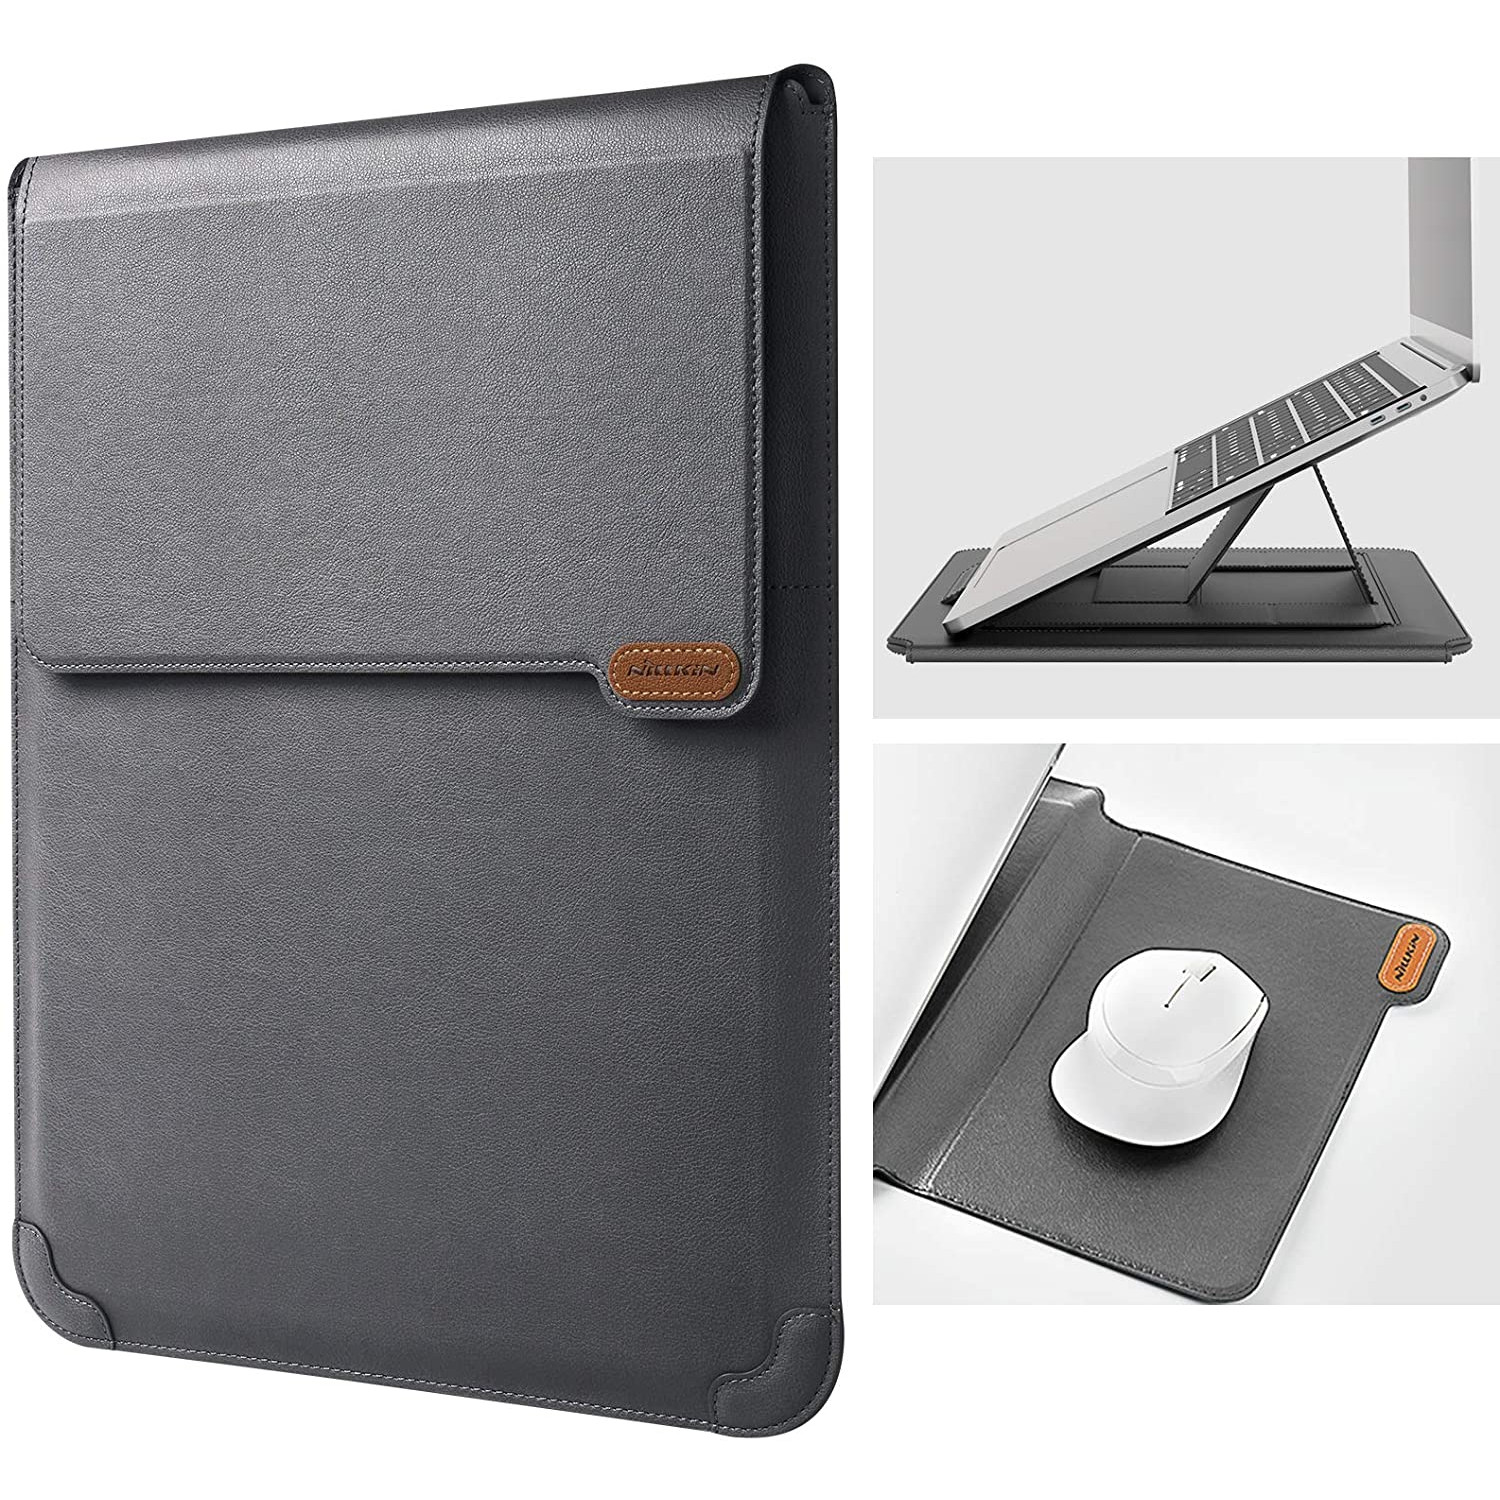 Túi chống sốc Macbook Laptop đa năng kiêm giá đỡ & miếng lót chuột hiệu Nillkin Sleeve Case Stand Adjustable hỗ trợ làm việc bảo vệ 360 độ - hàng chính hãng